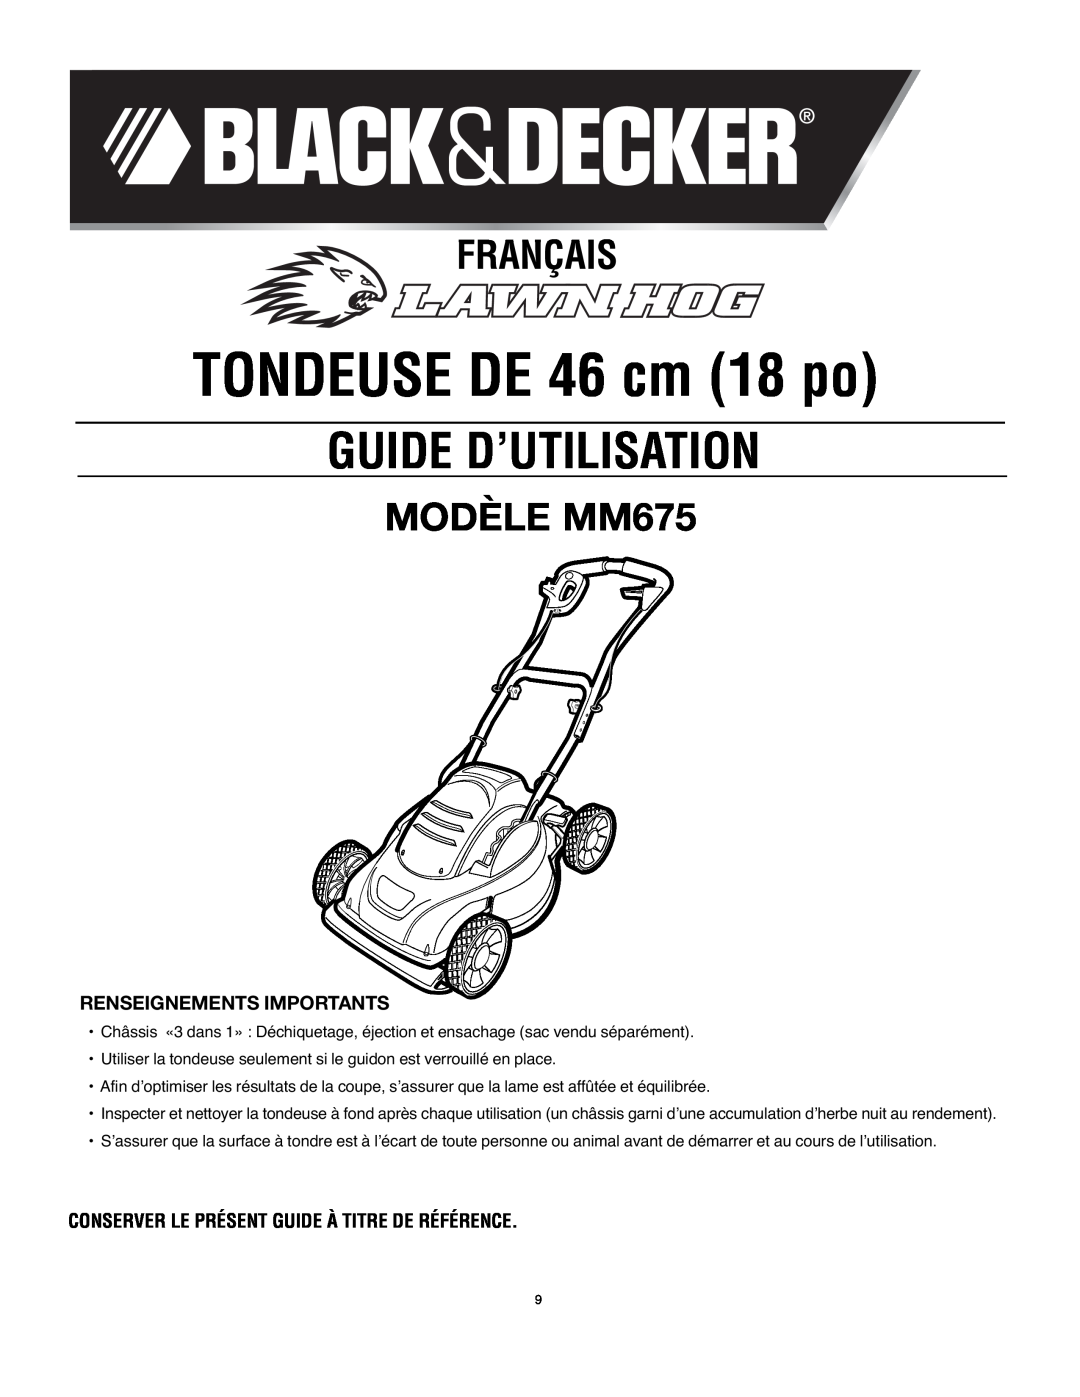 Black & Decker Guide D’Utilisation, Français, MODÈLE MM675, Renseignements Importants, TONDEUSE DE 46 cm 18 po 